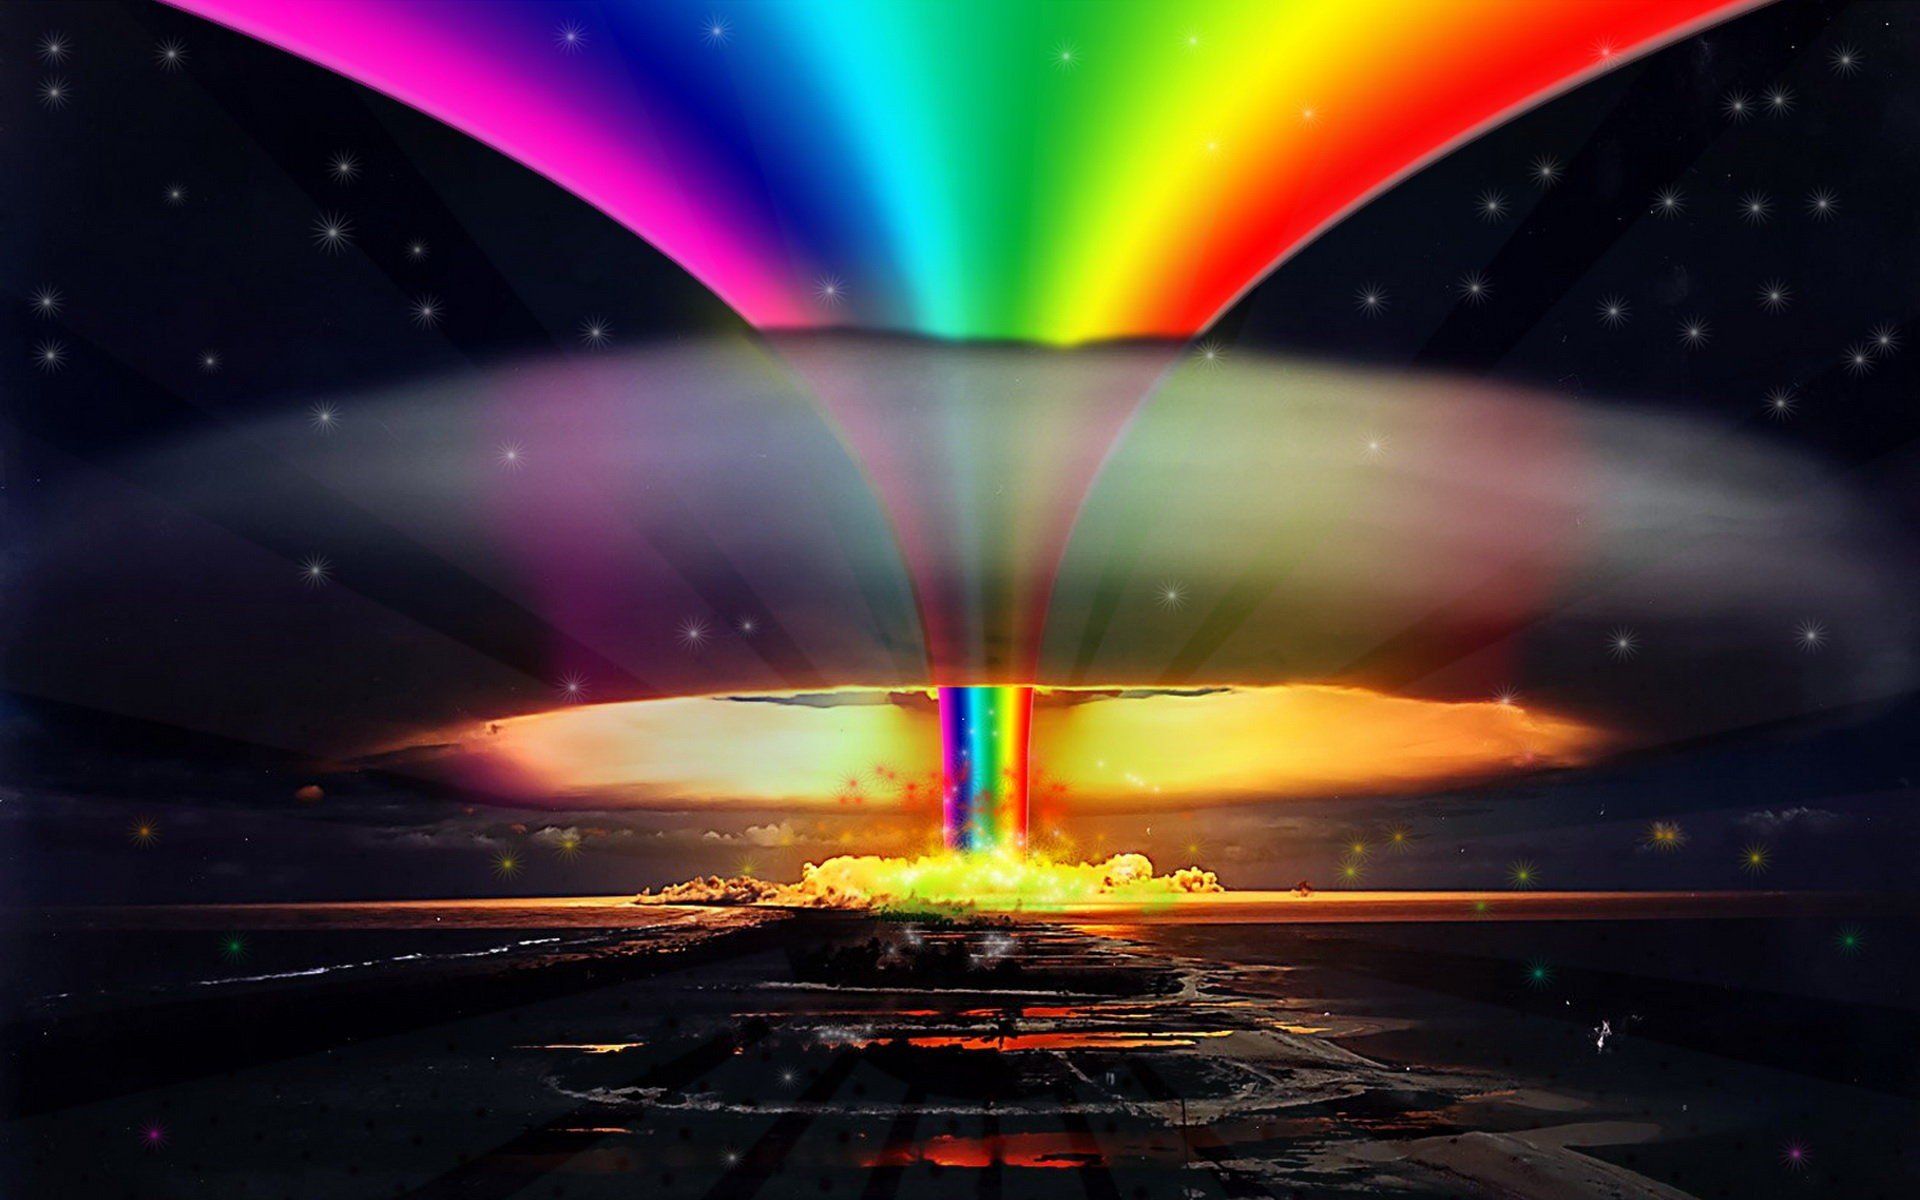 Fondos de pantalla: 1920x1200 px, colorante, explosiones, gay, multicolor